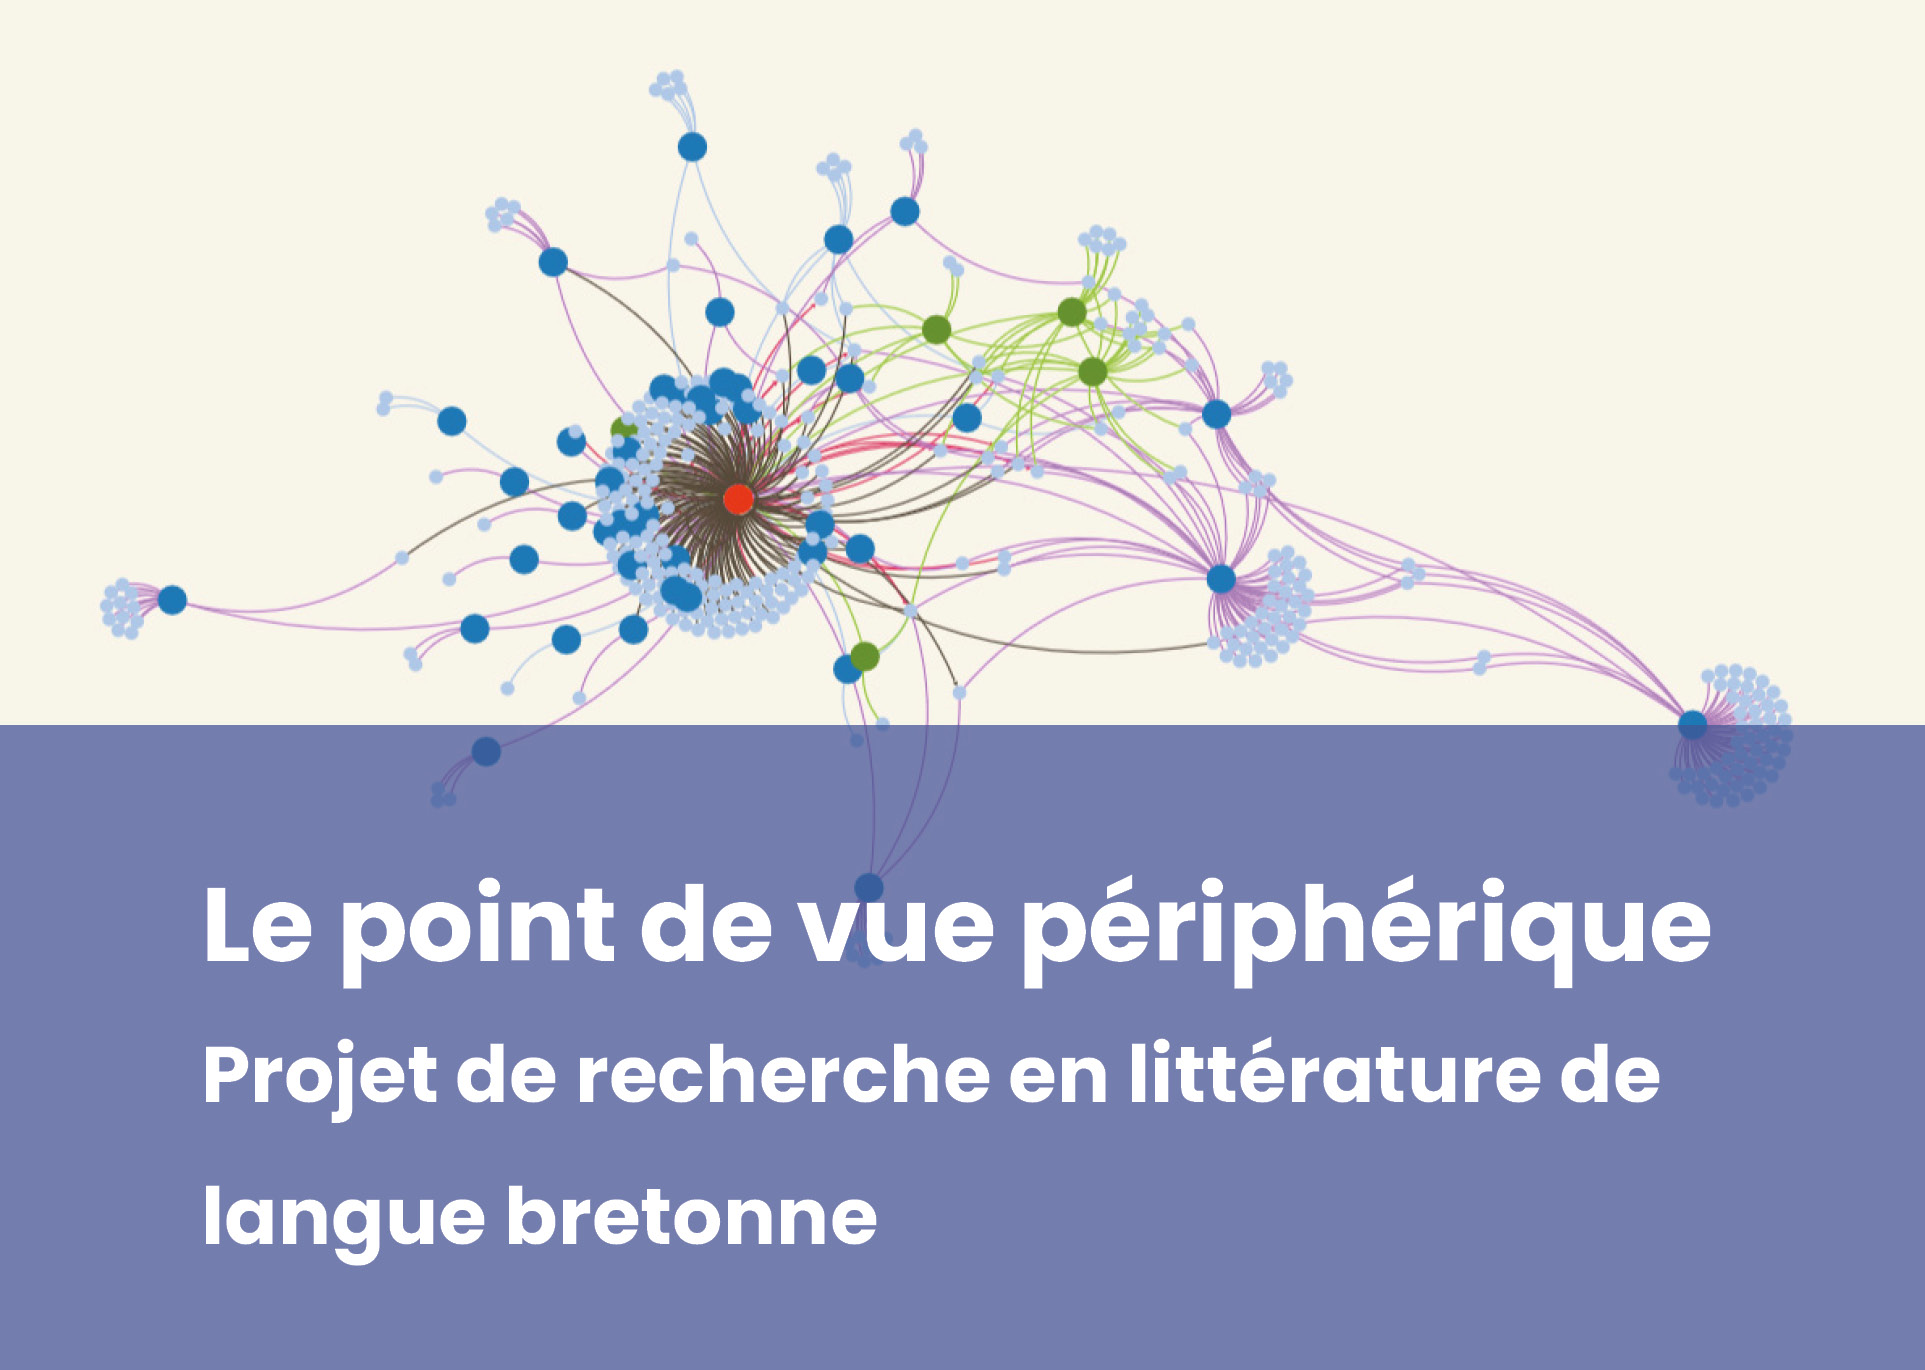 https://nouveau.univ-brest.fr/crbc/fr/page/le-point-de-vue-peripherique-projet-de-recherche-en-litterature-de-langue-bretonne